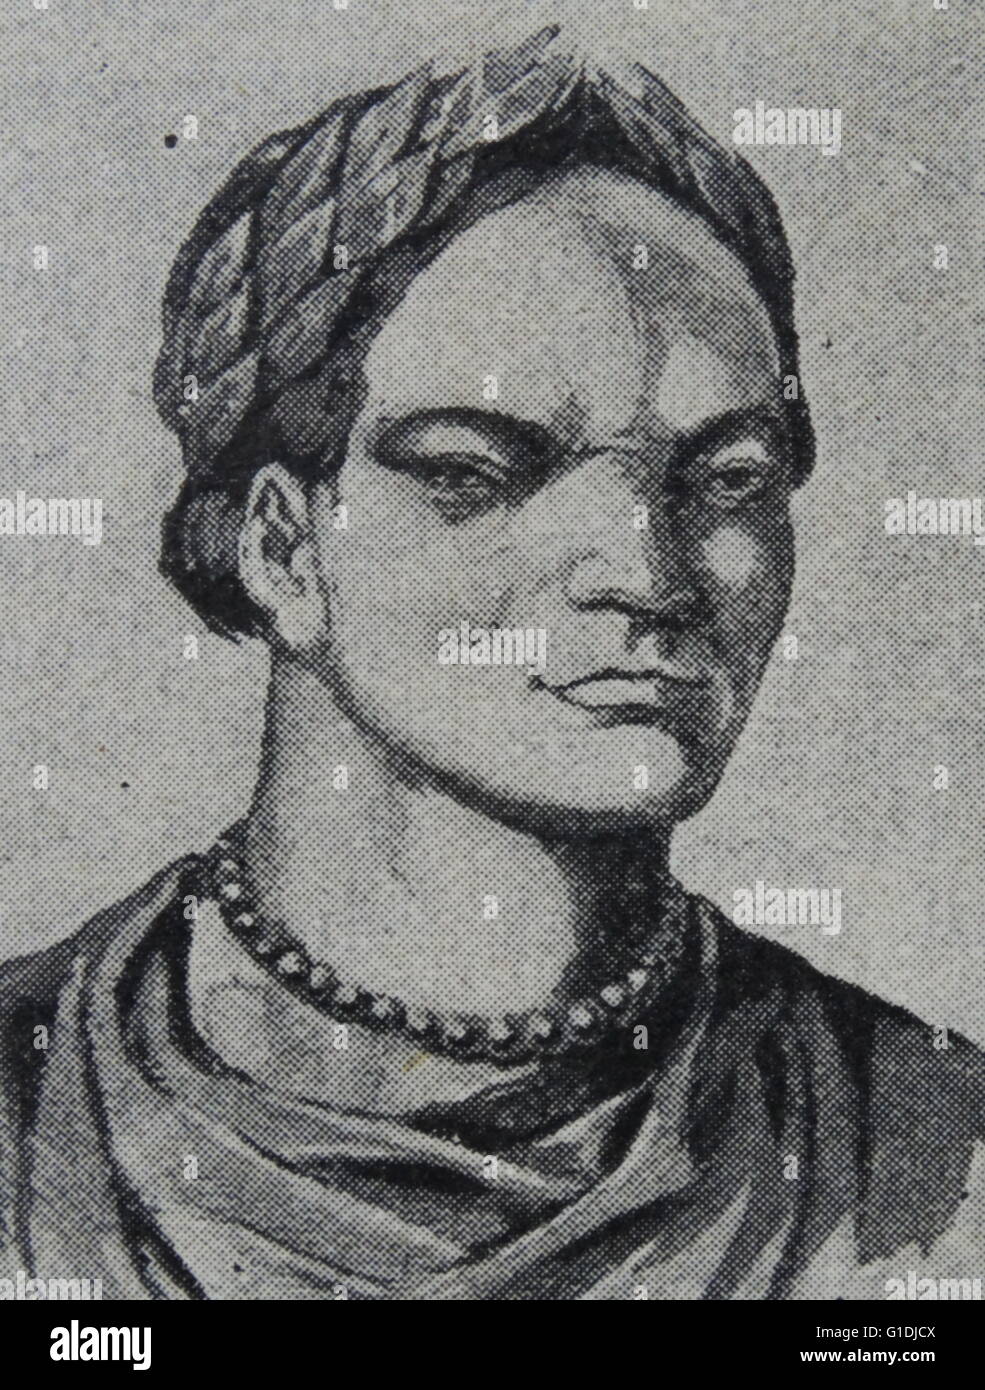 Attila (FL. 434-453), Attila der Hunne war der Herrscher der Hunnen von 434 bis zu seinem Tod im März 453. Attila war ein Führer des hunnischen Reiches, eine Stammeskonföderation, bestehend aus der Ostgoten, Hunnen und Alanen unter anderem auf dem Gebiet von Mittel- und Osteuropa Stockfoto